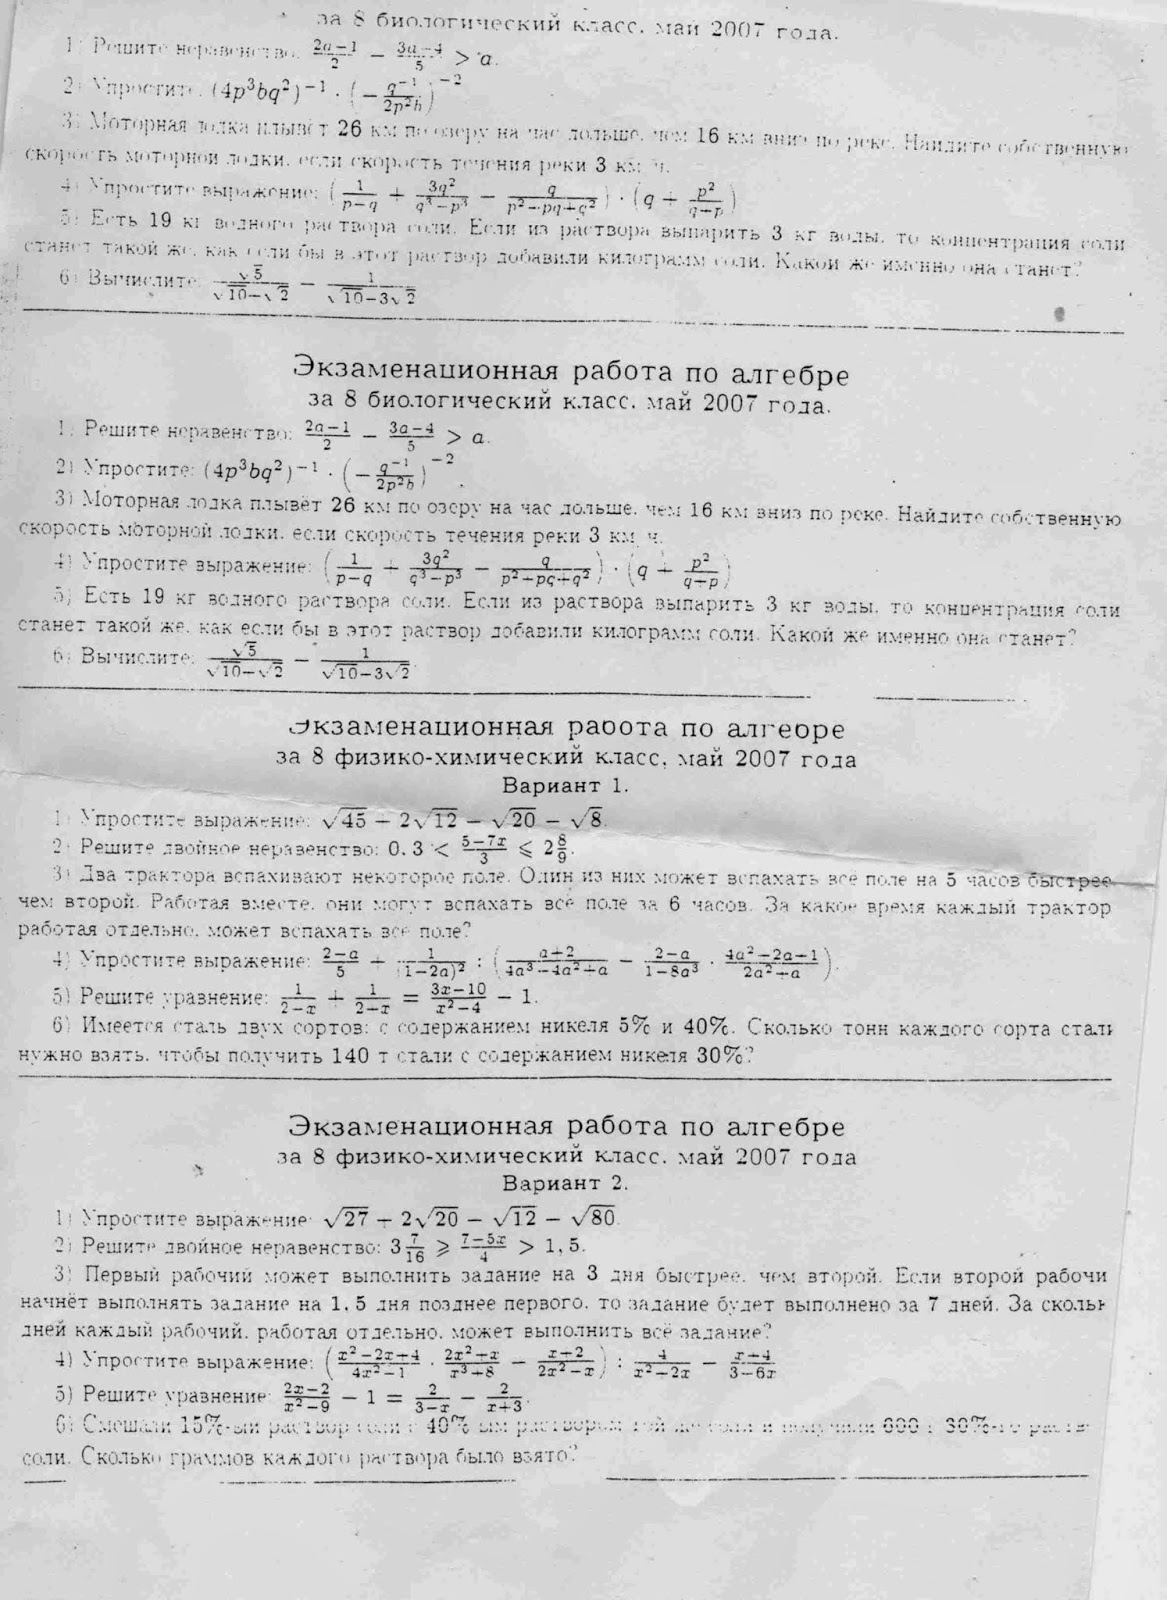 Шпаргалка: Программа вступительных экзаменов по математике в 2004г. (МГУ)